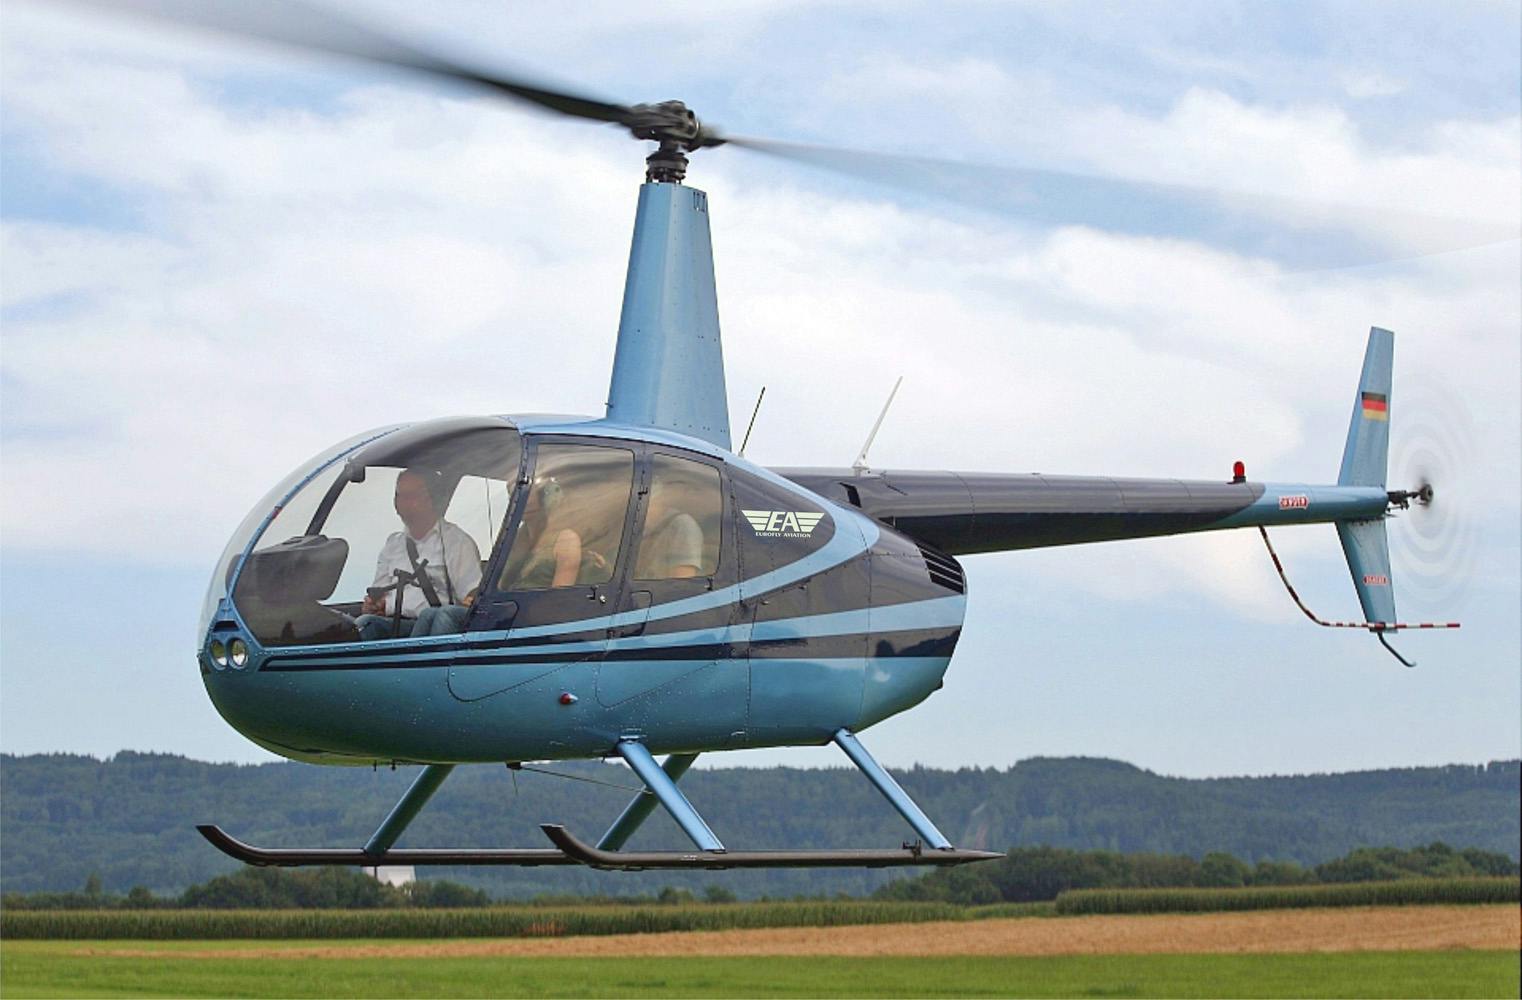 Hubschrauberrundflug | Faszination Ruhrgebiet | 20 Minuten